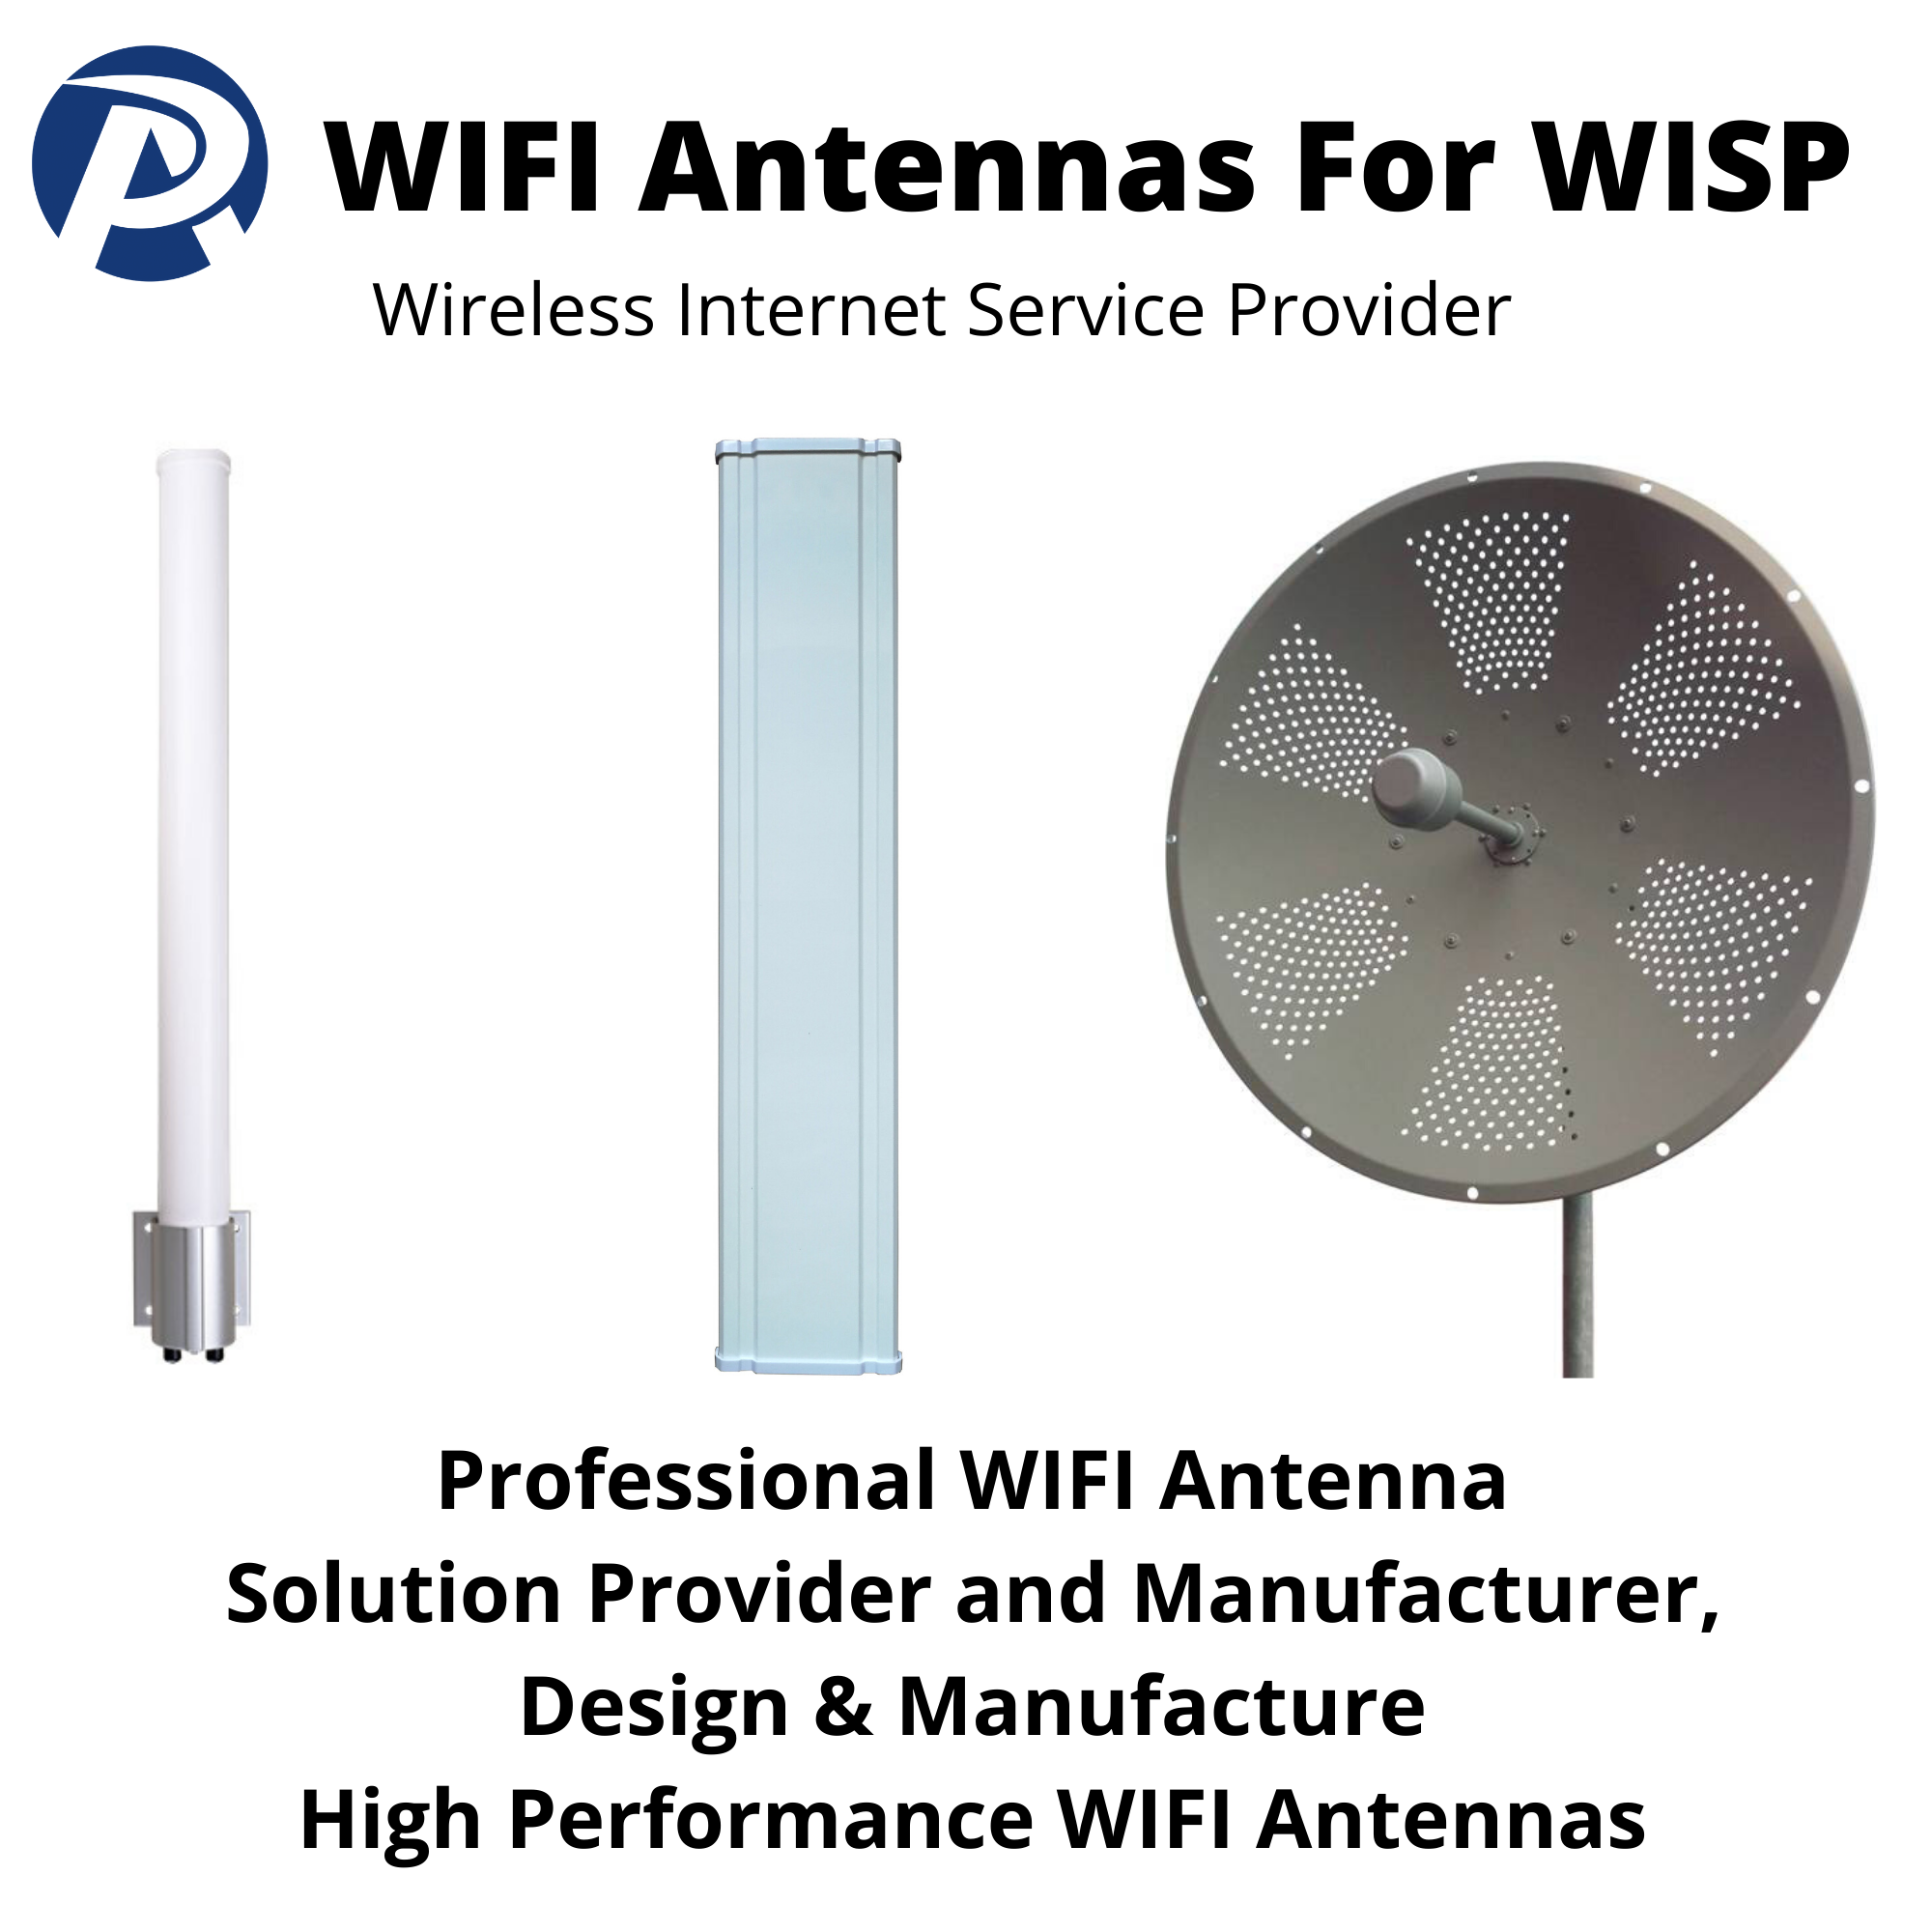 WIFI Antennas For WISP (Wireless Internet Service Provider) - WISP WIFI Antenna Manufacturer & Supplier